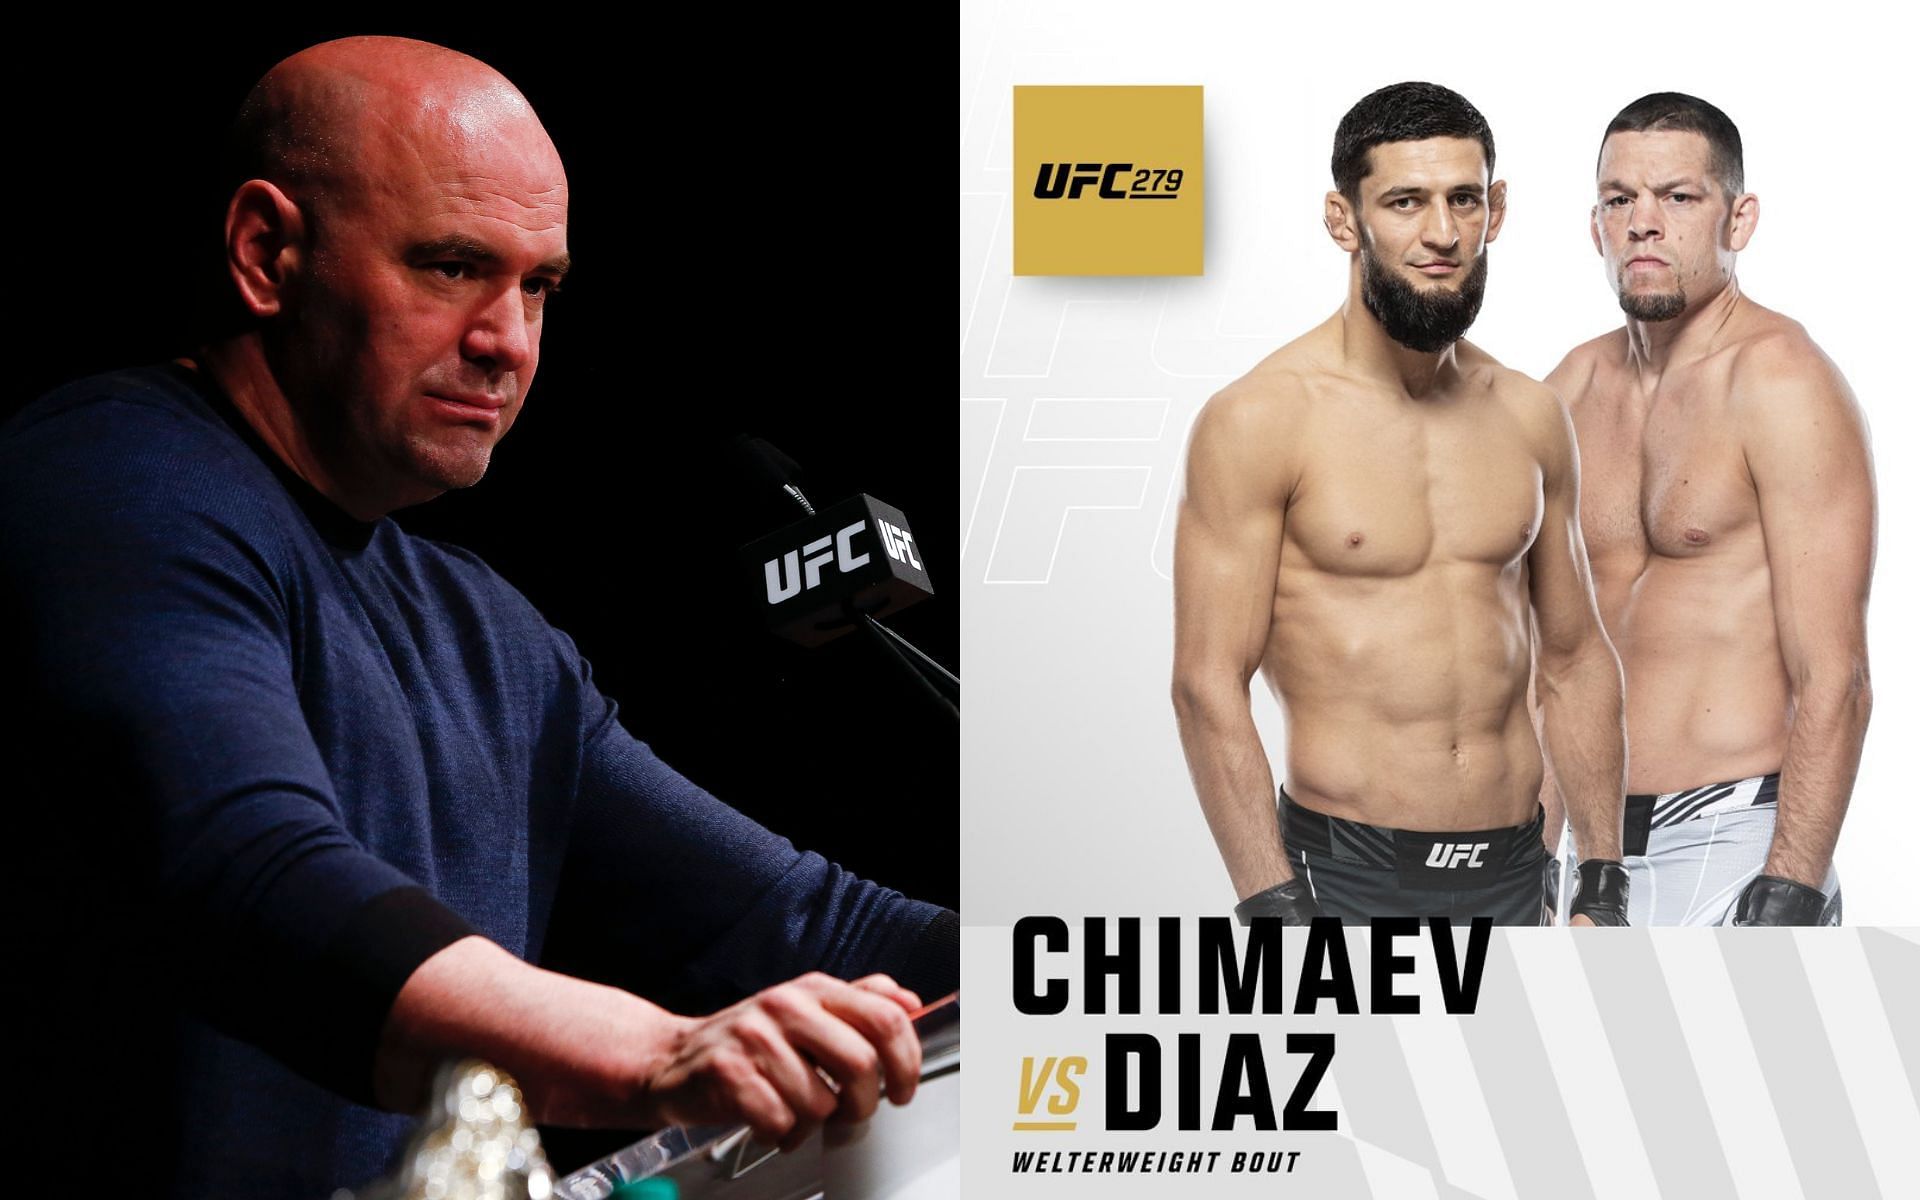 Dana White (L), Nate Diaz vs. Khamzat Chimaev poster (R) (via @ufc on Twitter)